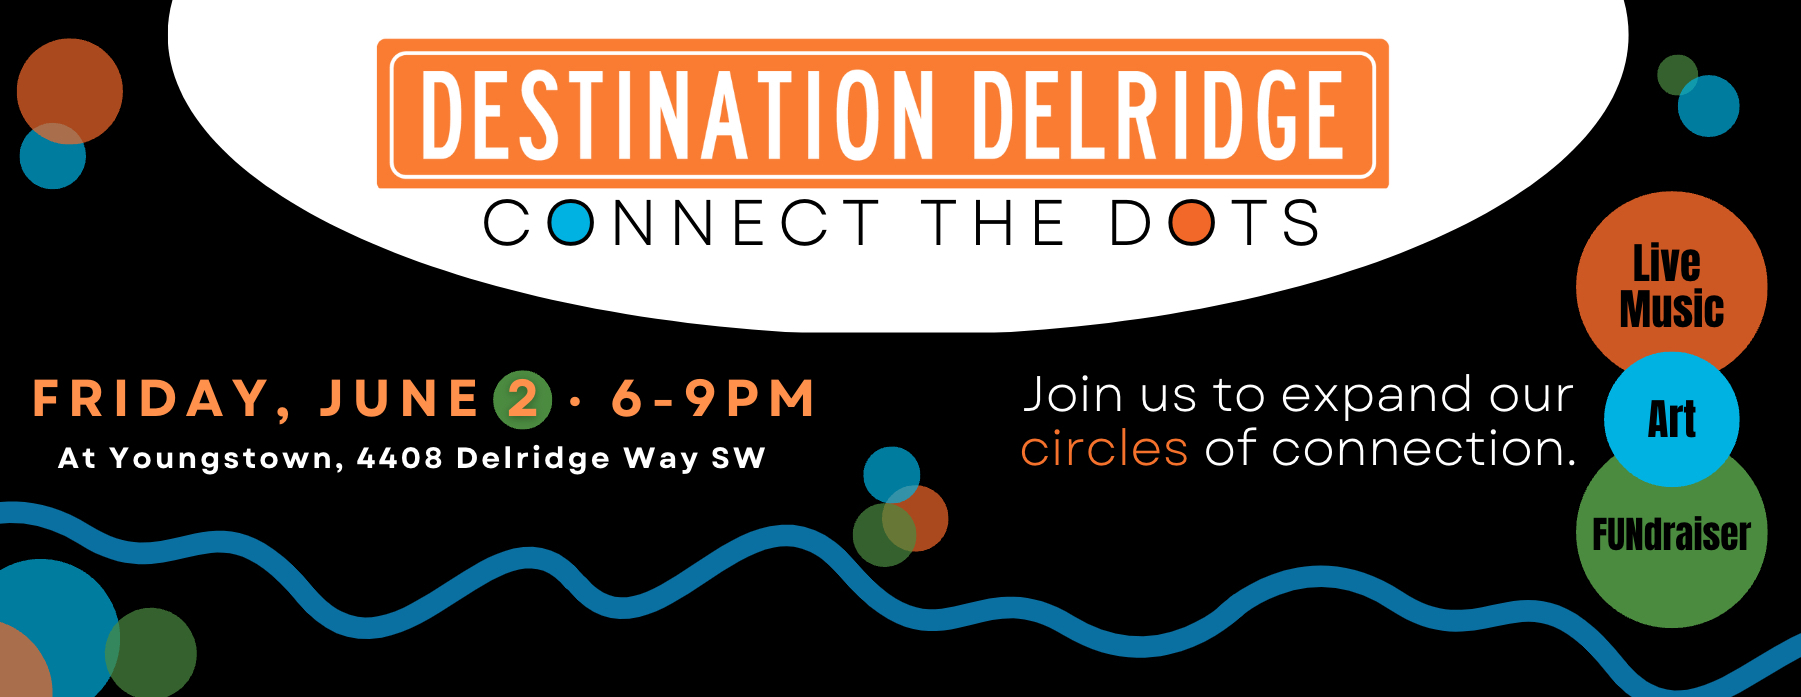 Delridge Neighborhoods Development Association